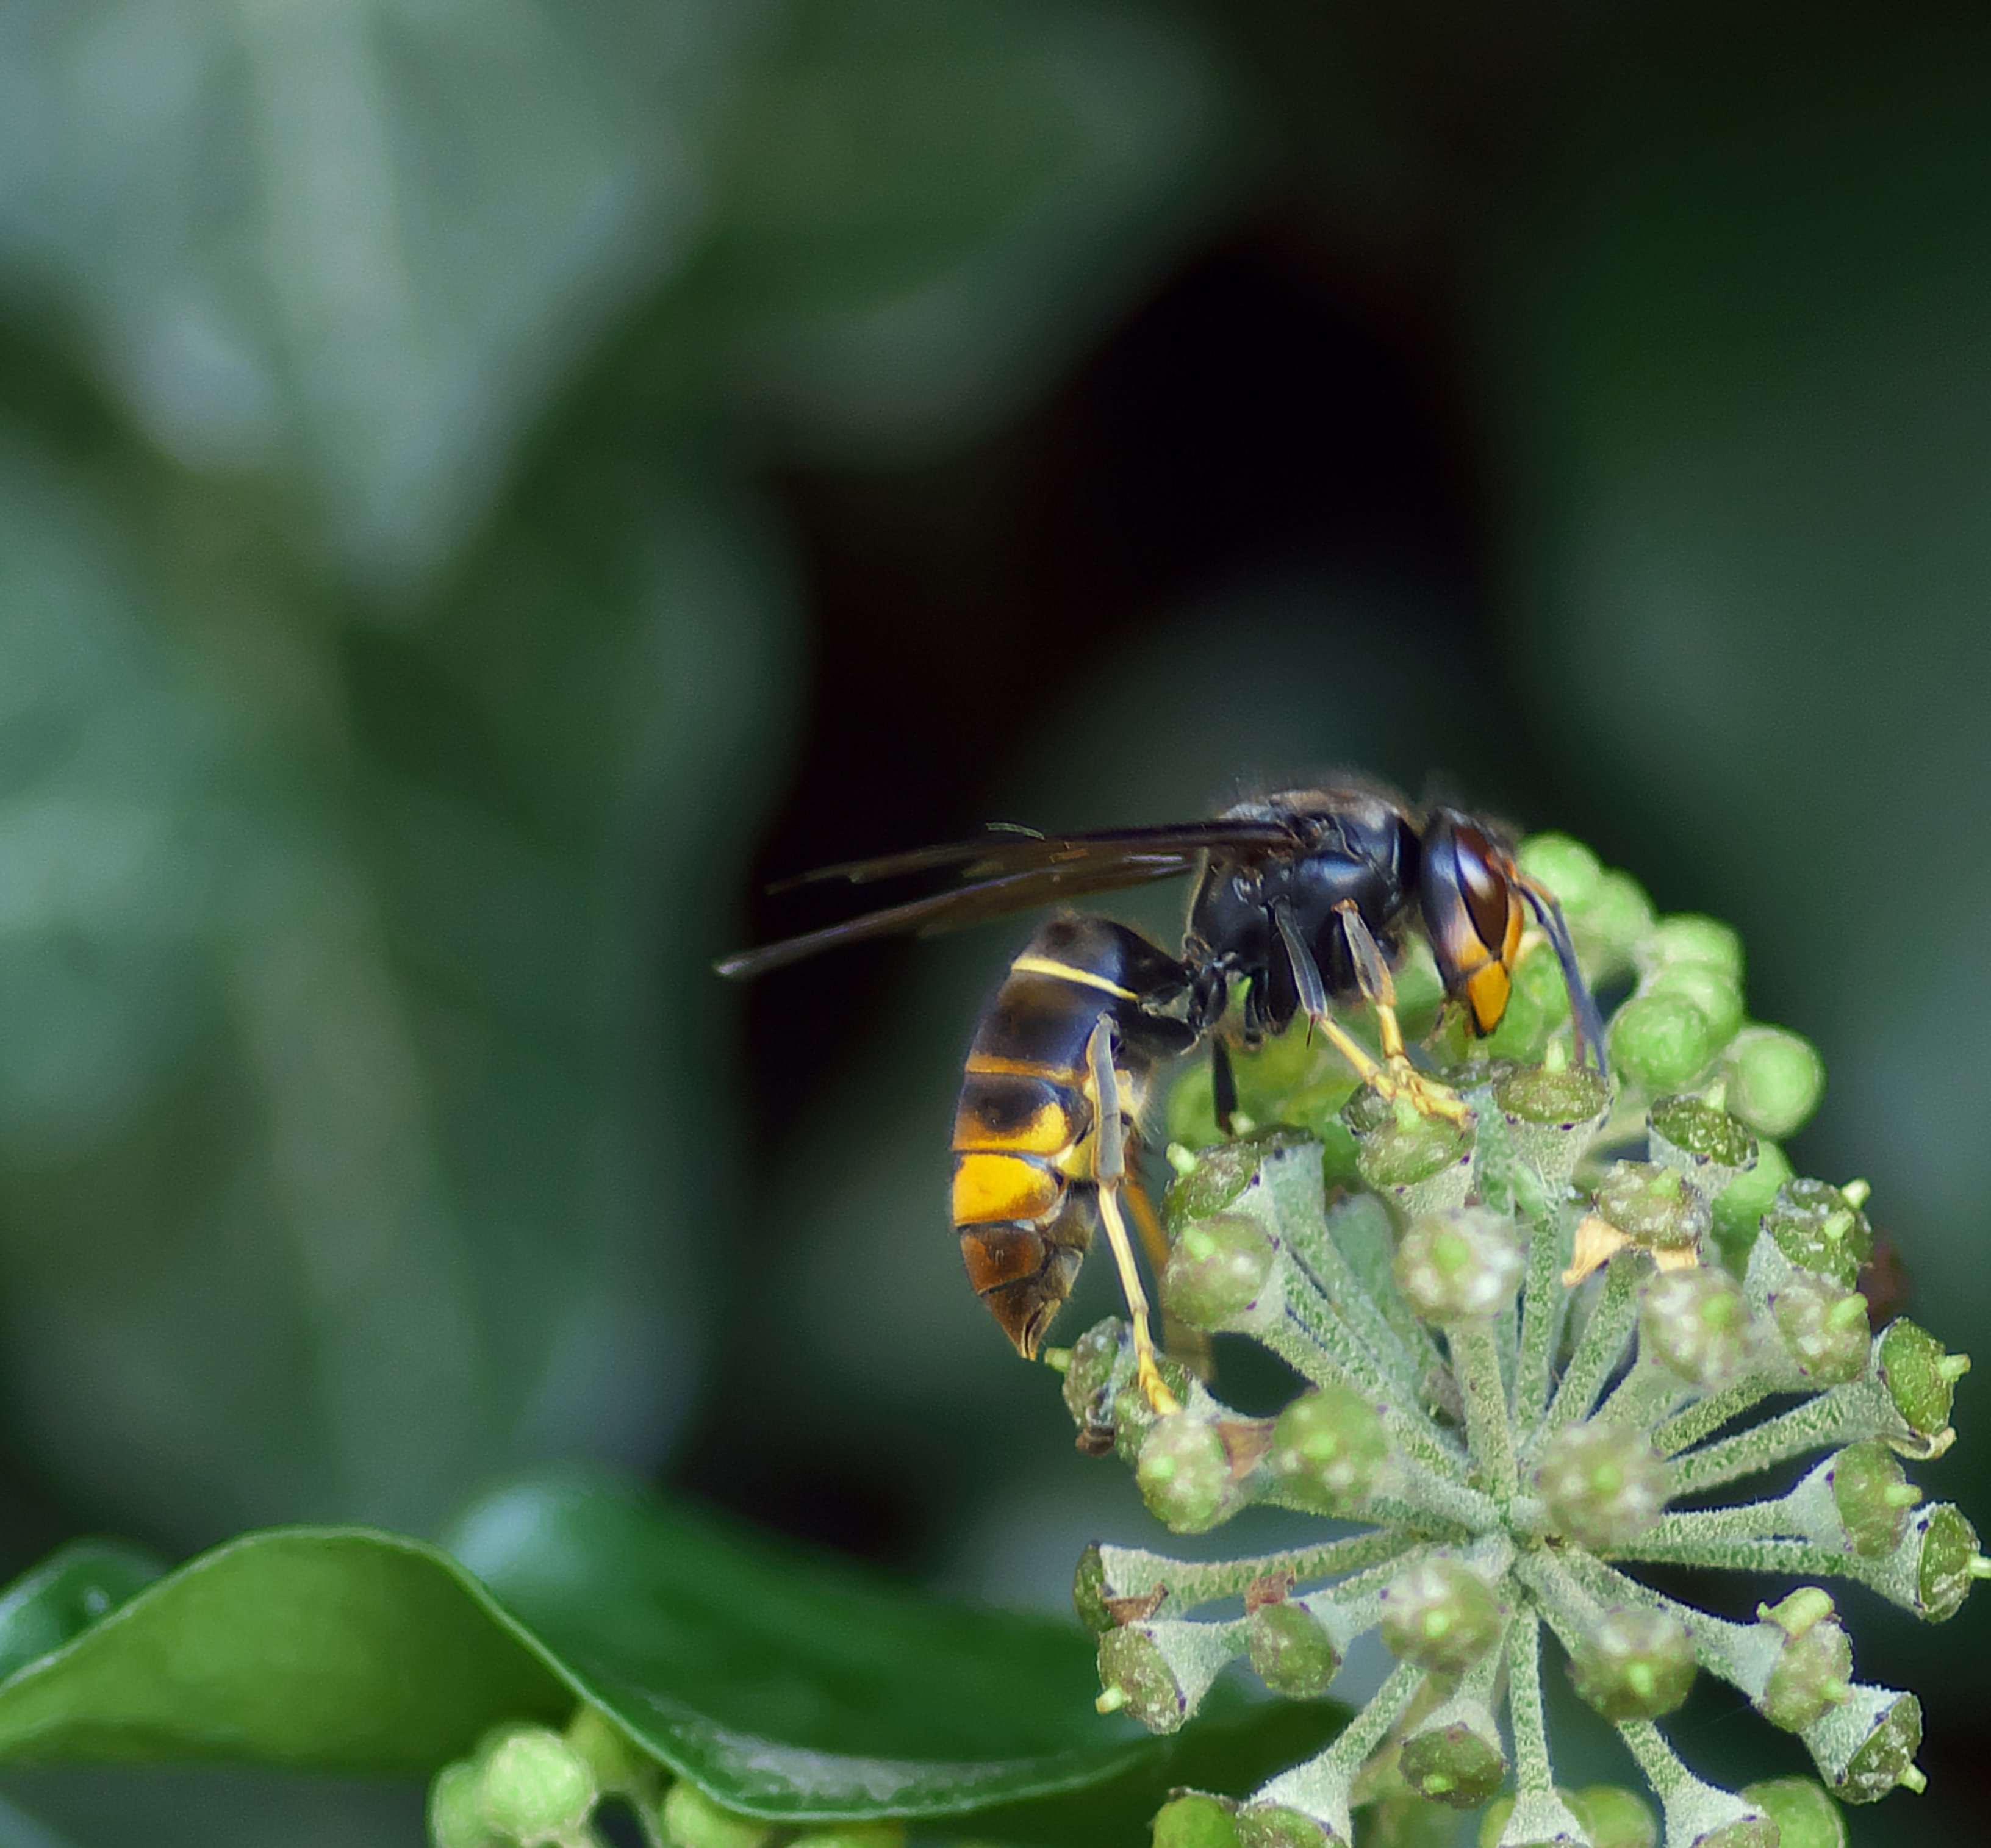 És pitjor la picada de la vespa asiàtica que la de l'autòctona europea?